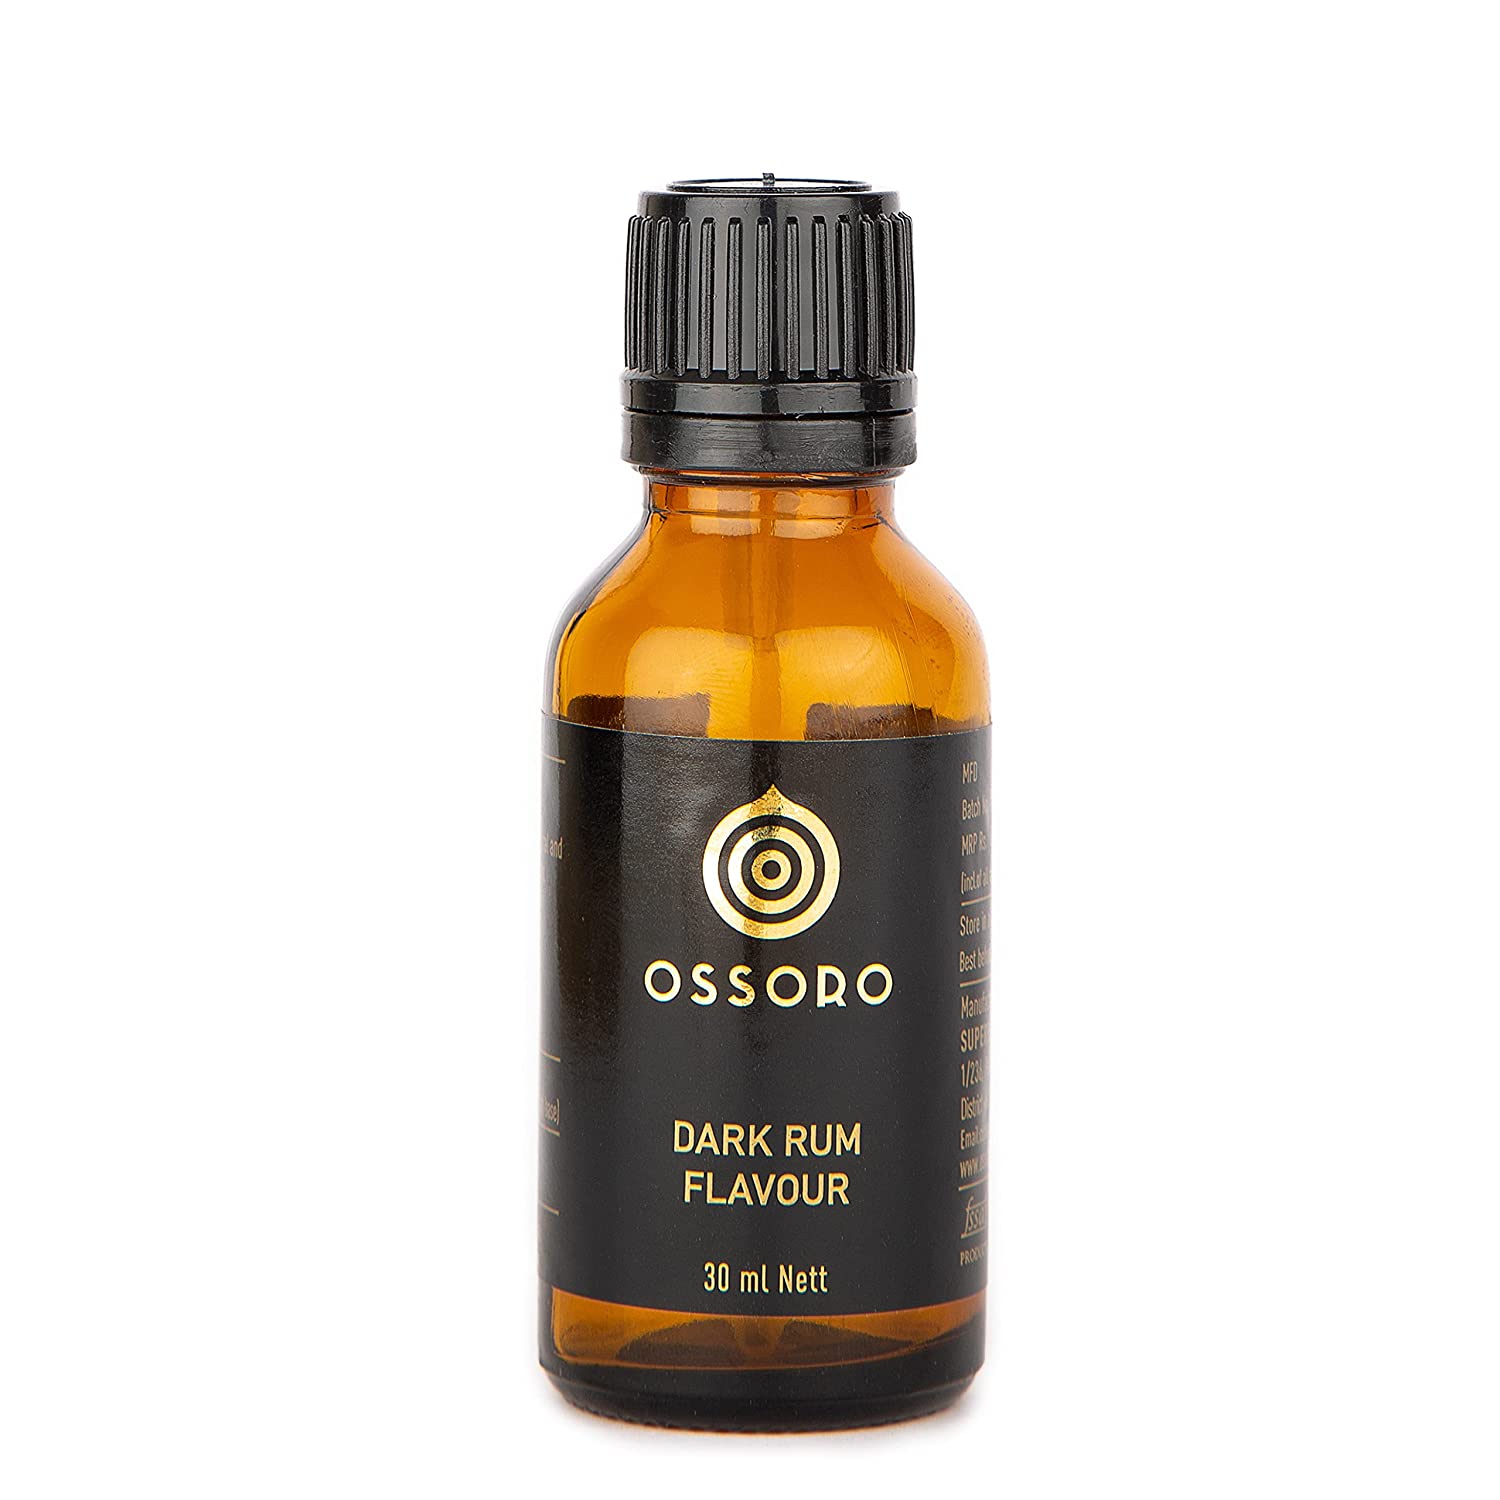 Ossoro Dark Rum Flavour Image